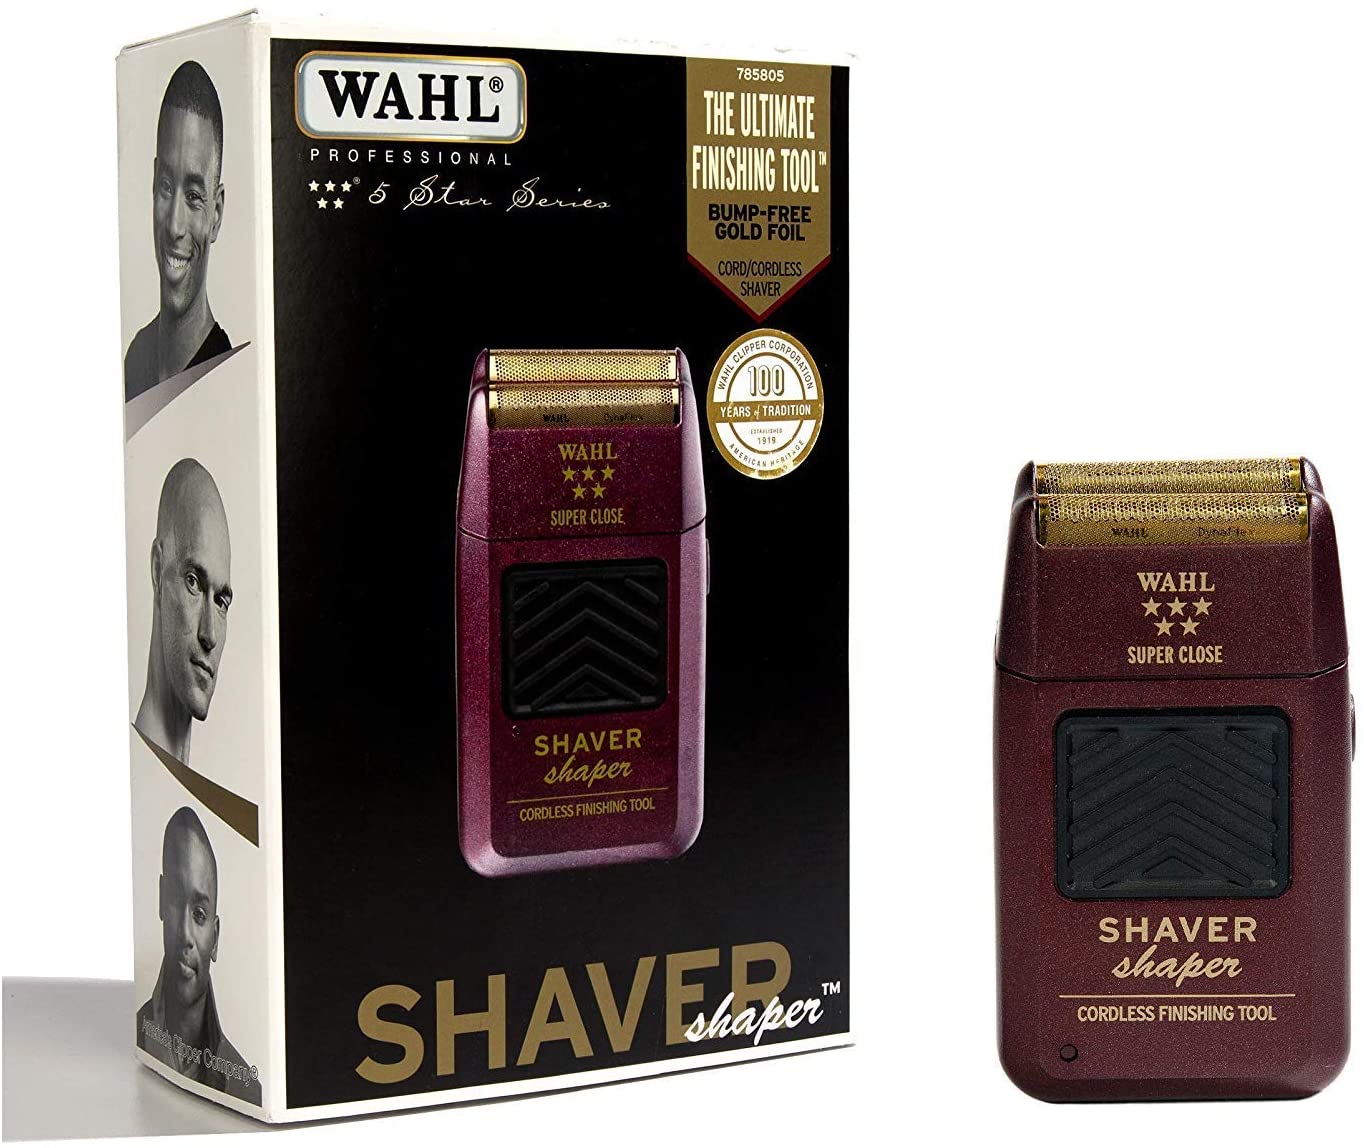 Shaver 5 star, rasuradora, ,Máquina de afeitar WAHL 